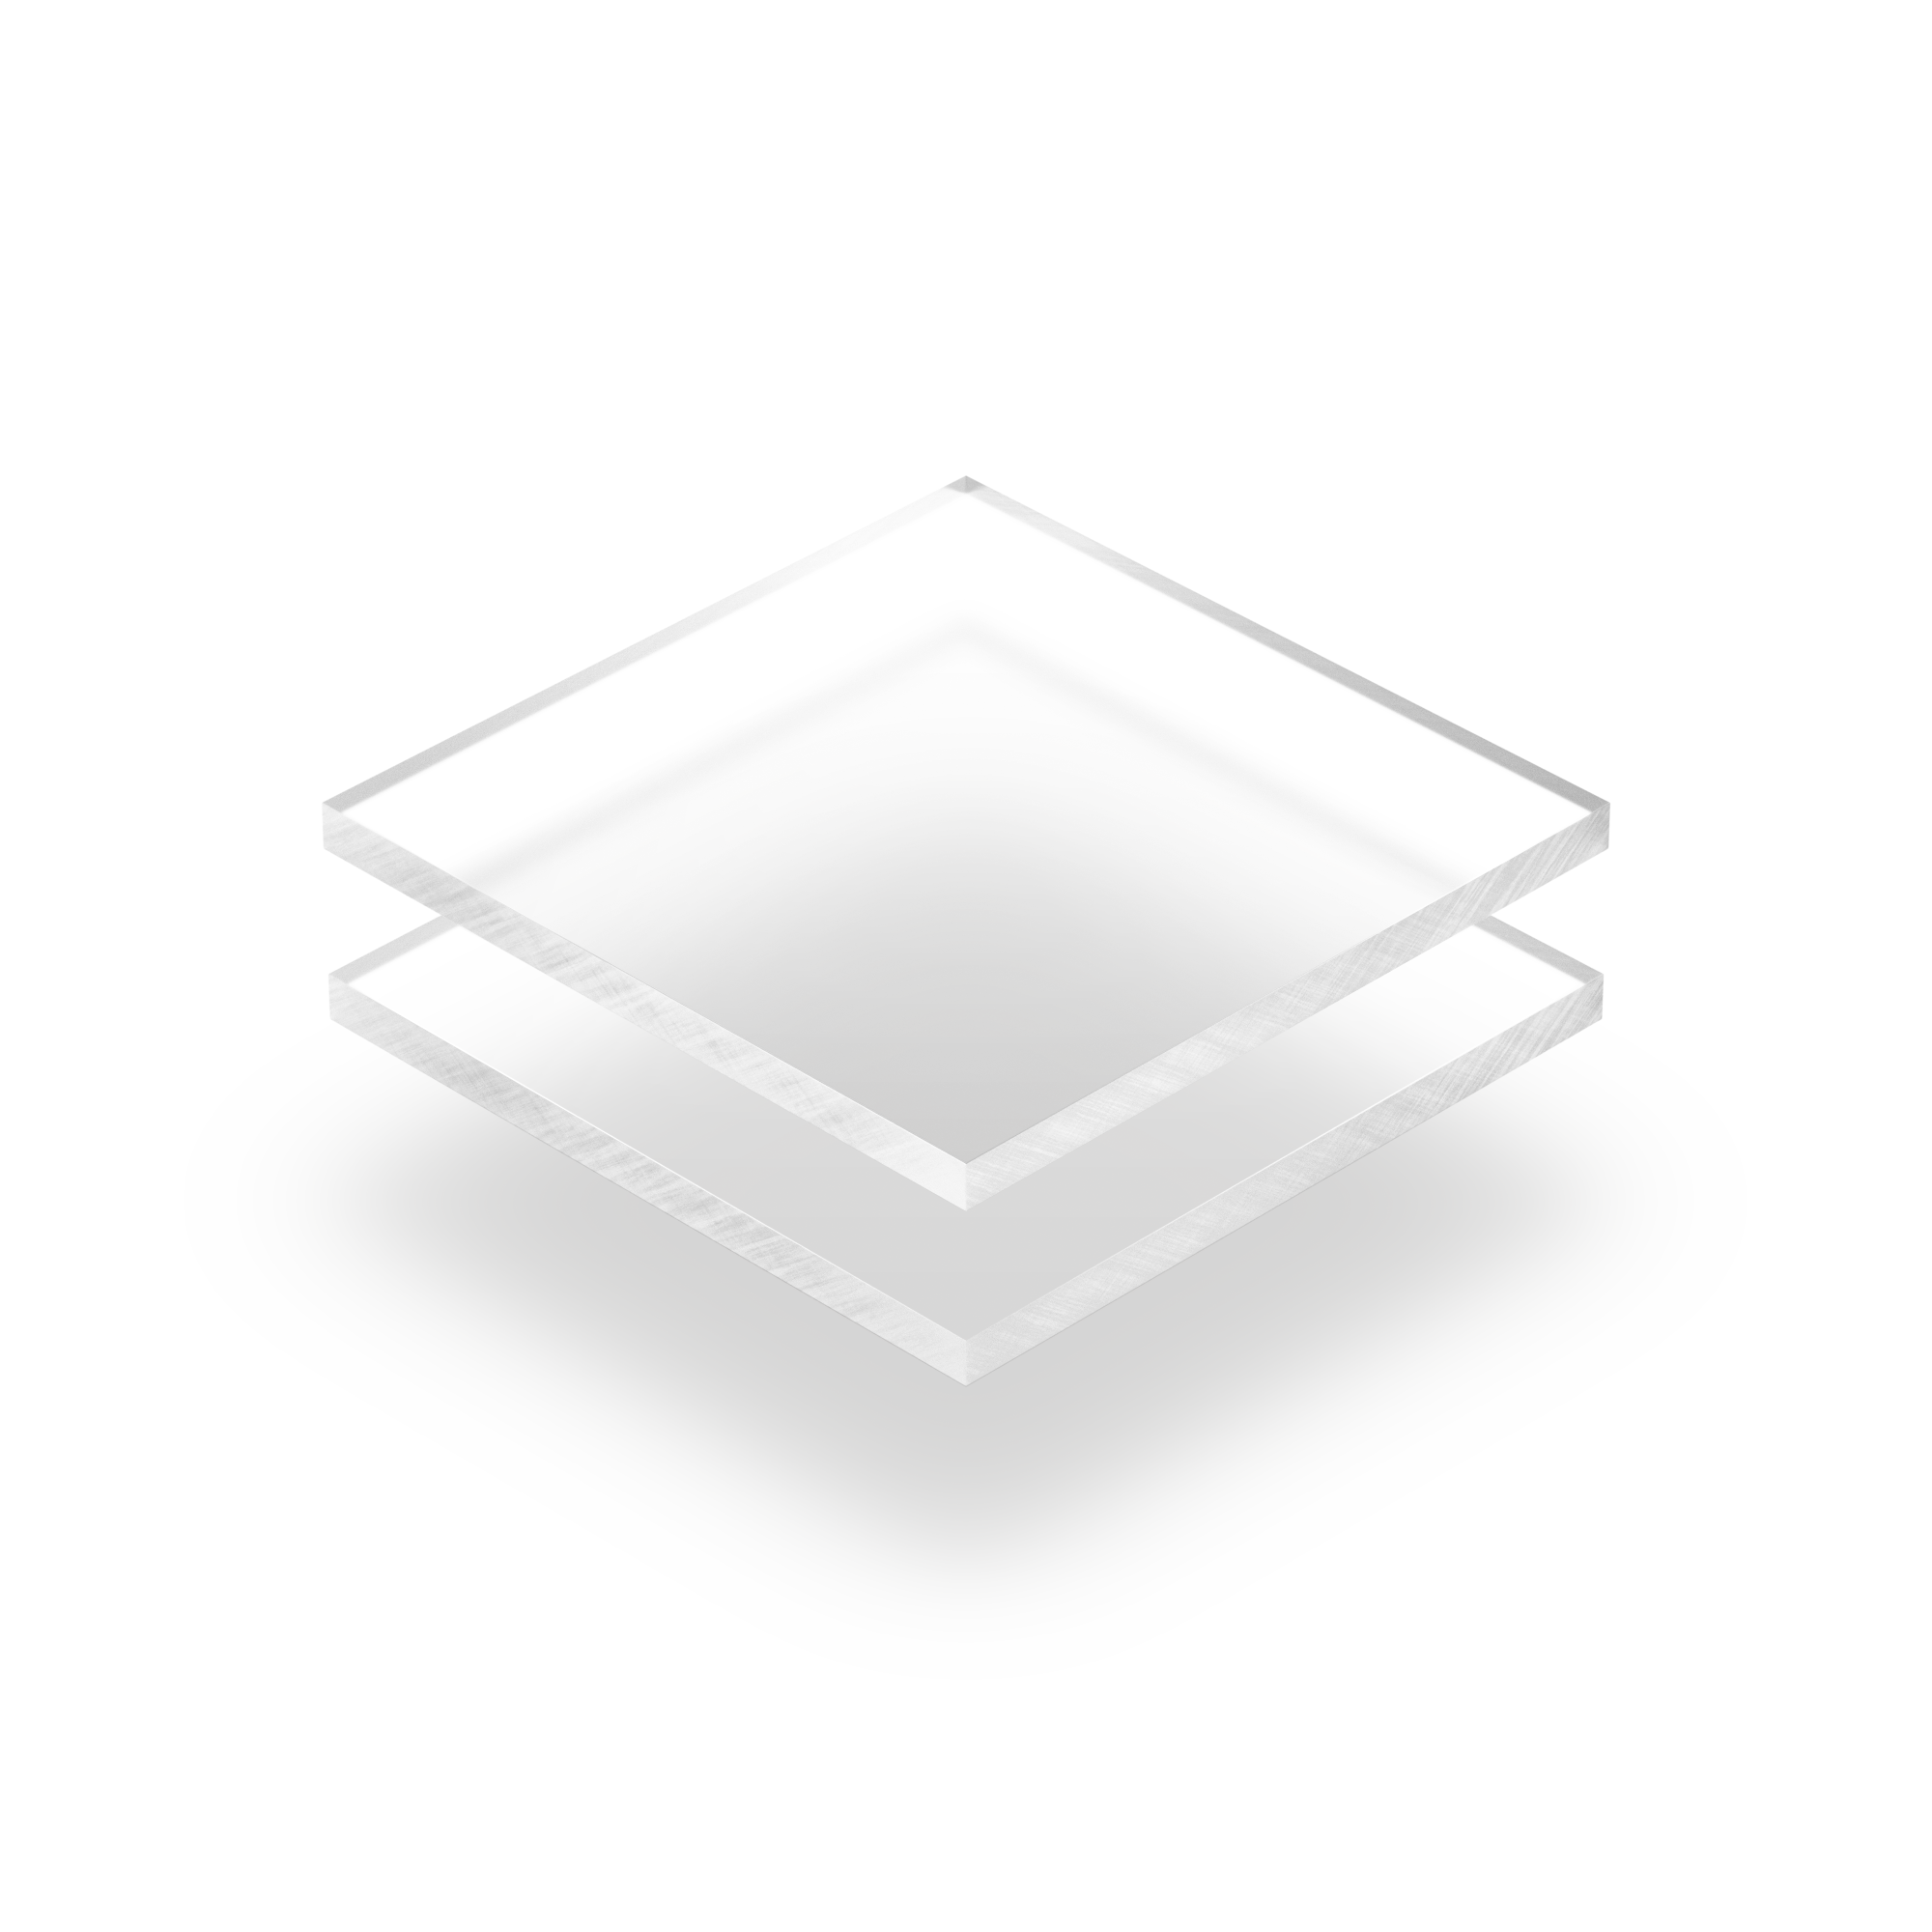 Plexiglass givré transparent 4mm